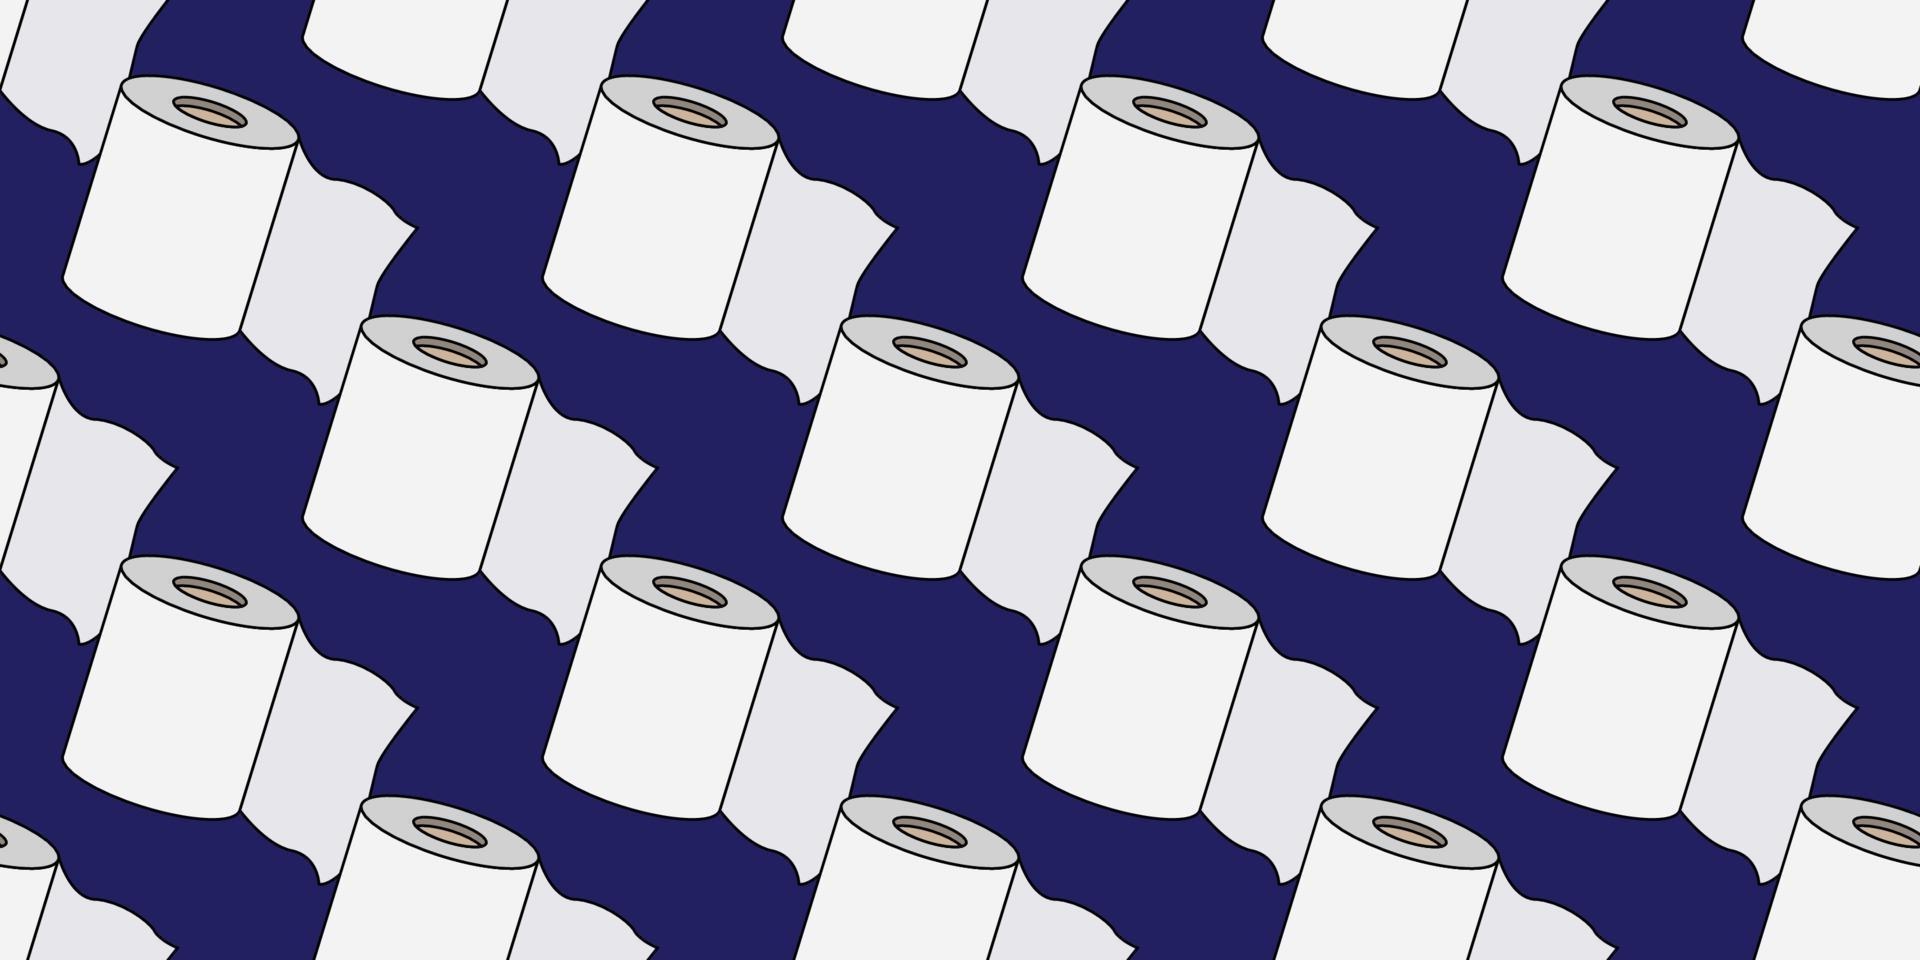 sömlös vektor mönster av platt design toalettpapper eller toalettrullar isolerad på blå bakgrund. mjukpapper tecknad vektor illustration.